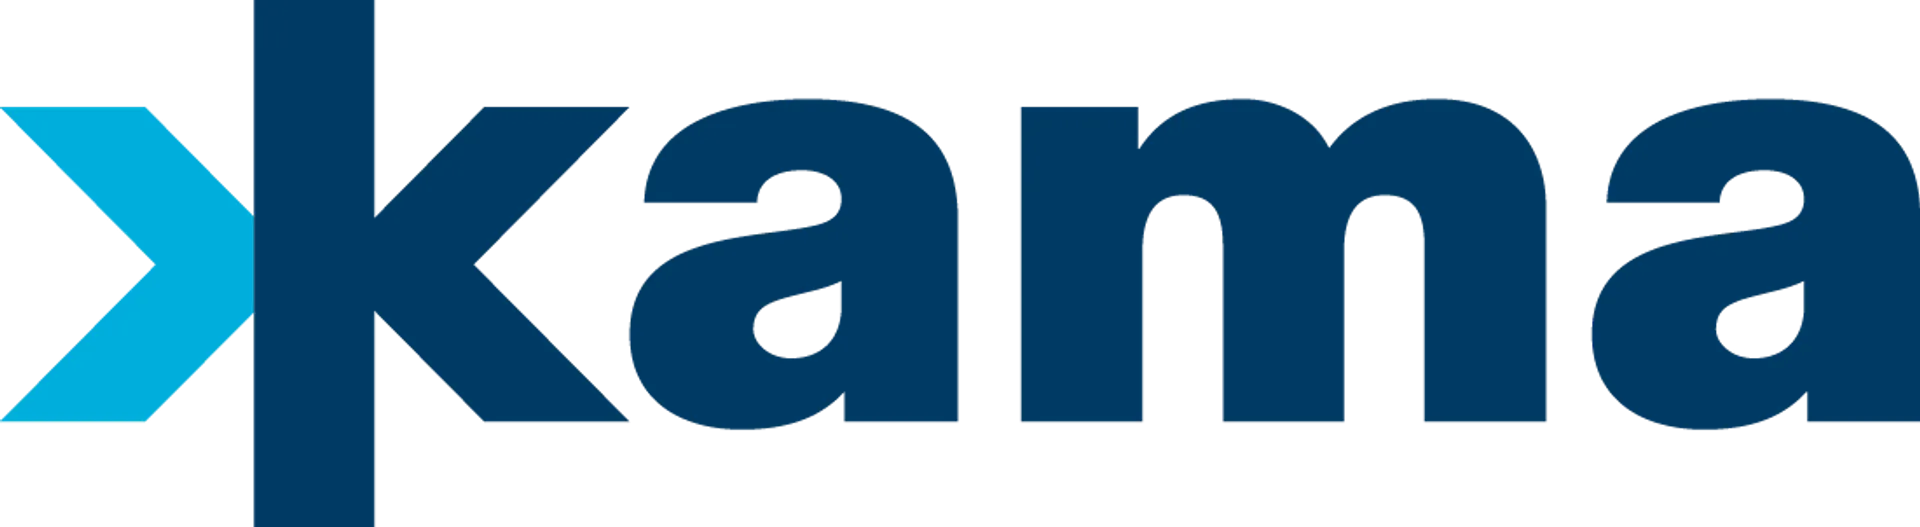 KAMA logo of current flyer